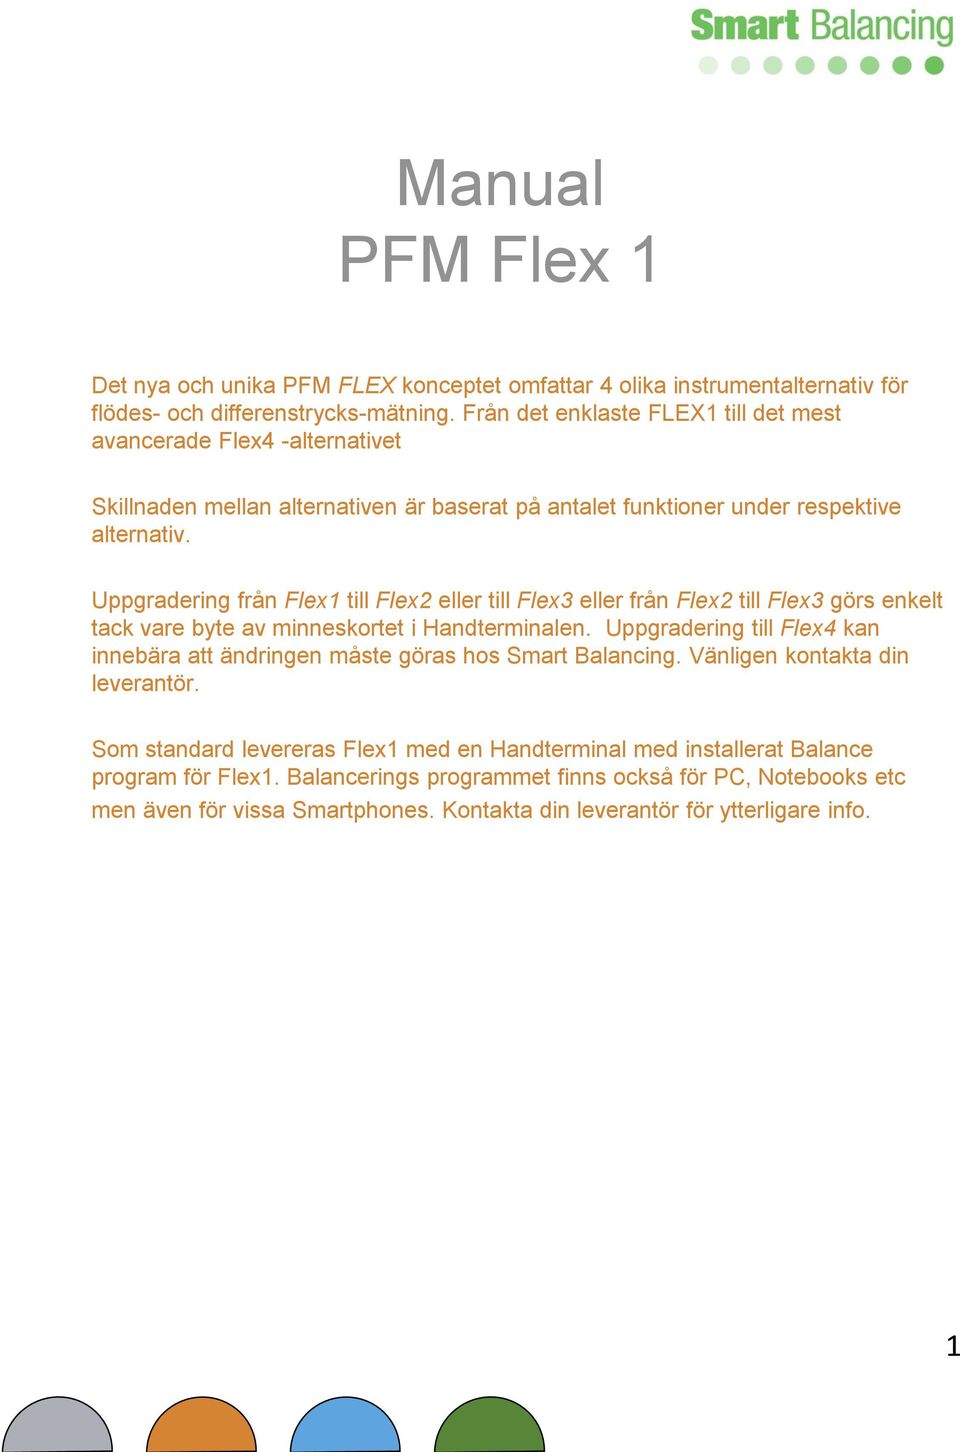 Uppgradering från Flex1 till Flex2 eller till Flex3 eller från Flex2 till Flex3 görs enkelt tack vare byte av minneskortet i Handterminalen.